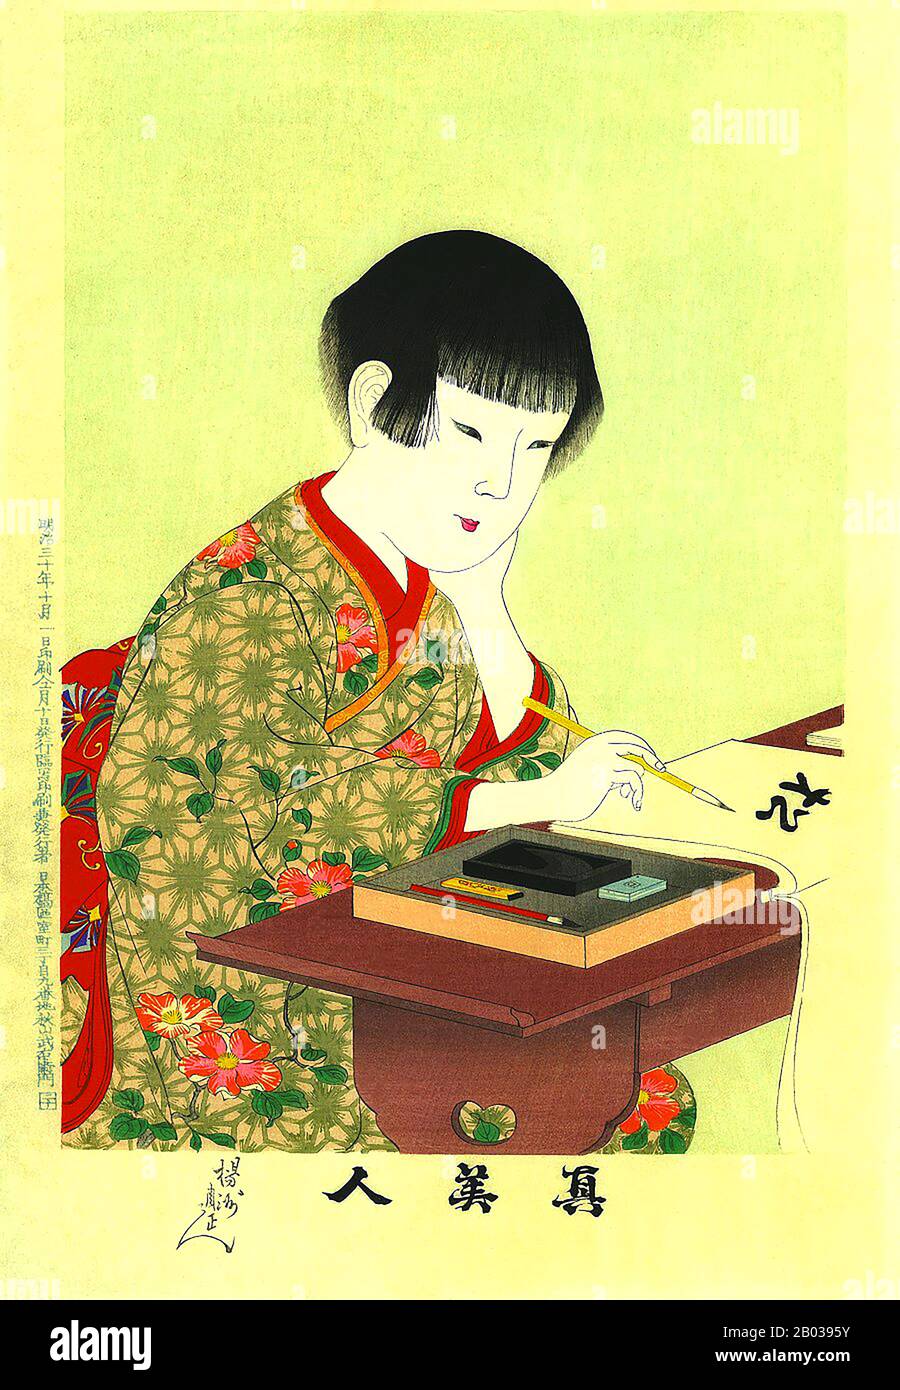 Toyohara Chikanobu, mieux connu pour ses contemporains comme Yōshū Chikanobu, était un artiste prolifique de la période Meiji au Japon. Ses œuvres capturent la transition de l'âge du samouraï à la modernité Meiji. En 1875 (Meiji 8), il décide d'essayer de faire vivre un artiste. Il s'est rendu à Tokyo. Il a trouvé du travail comme artiste pour le Kaishin Shimbun. En outre, il a produit des œuvres d'art nishiki-e. Dans ses jours plus jeunes, il avait étudié l'école de peinture de Kanō; mais son intérêt a été tiré à ukiyo-e. Comme beaucoup d'artistes ukiyo-e, Chikanobu a tourné son attention vers une grande variété de sujets Banque D'Images